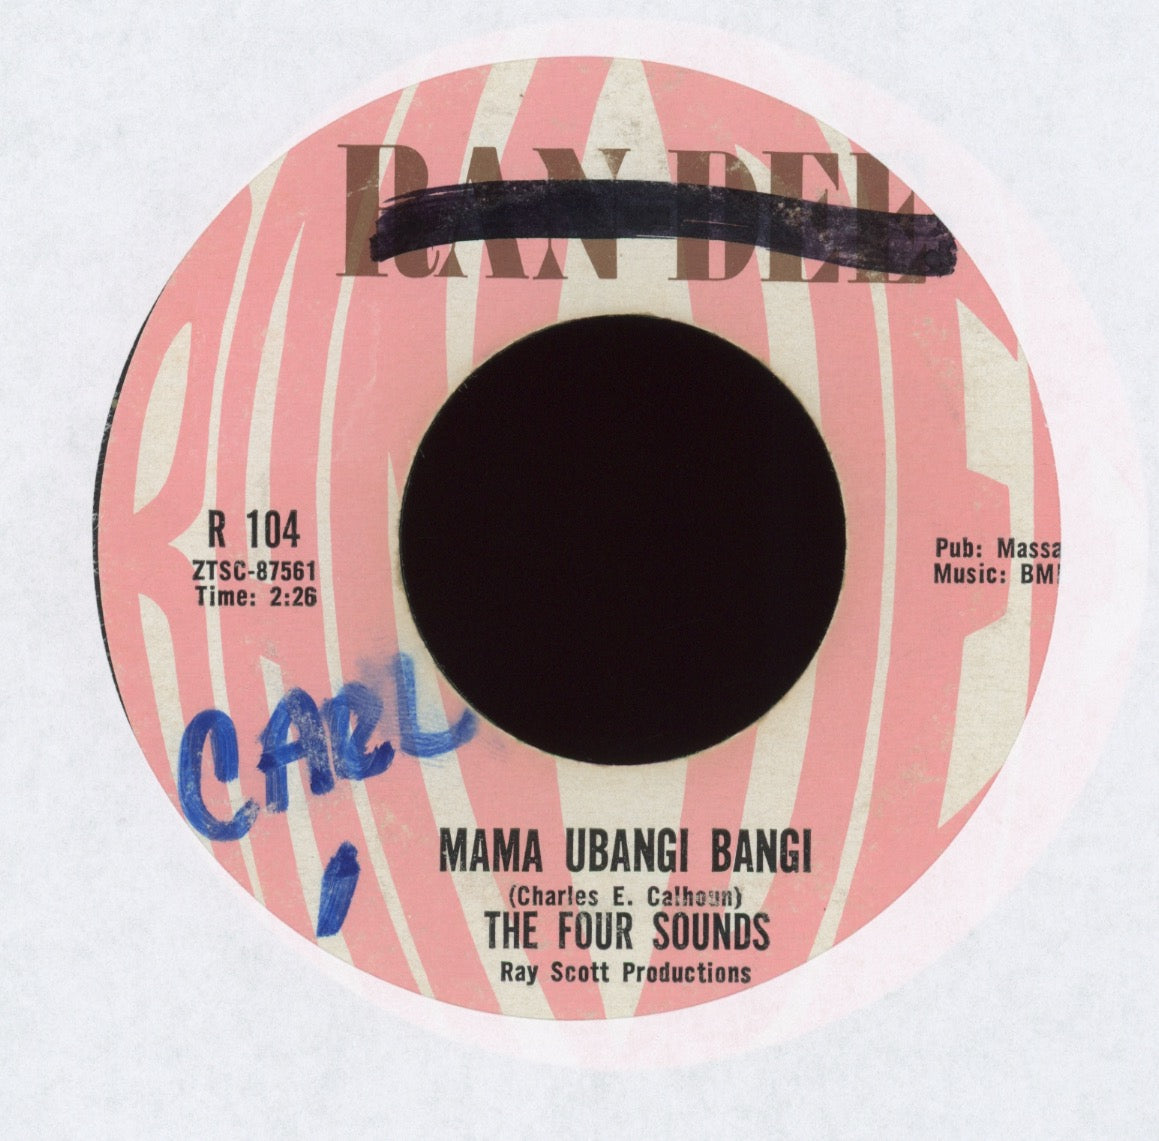 The Four Sounds - Mama Ubangi Bangi on Ran Dee